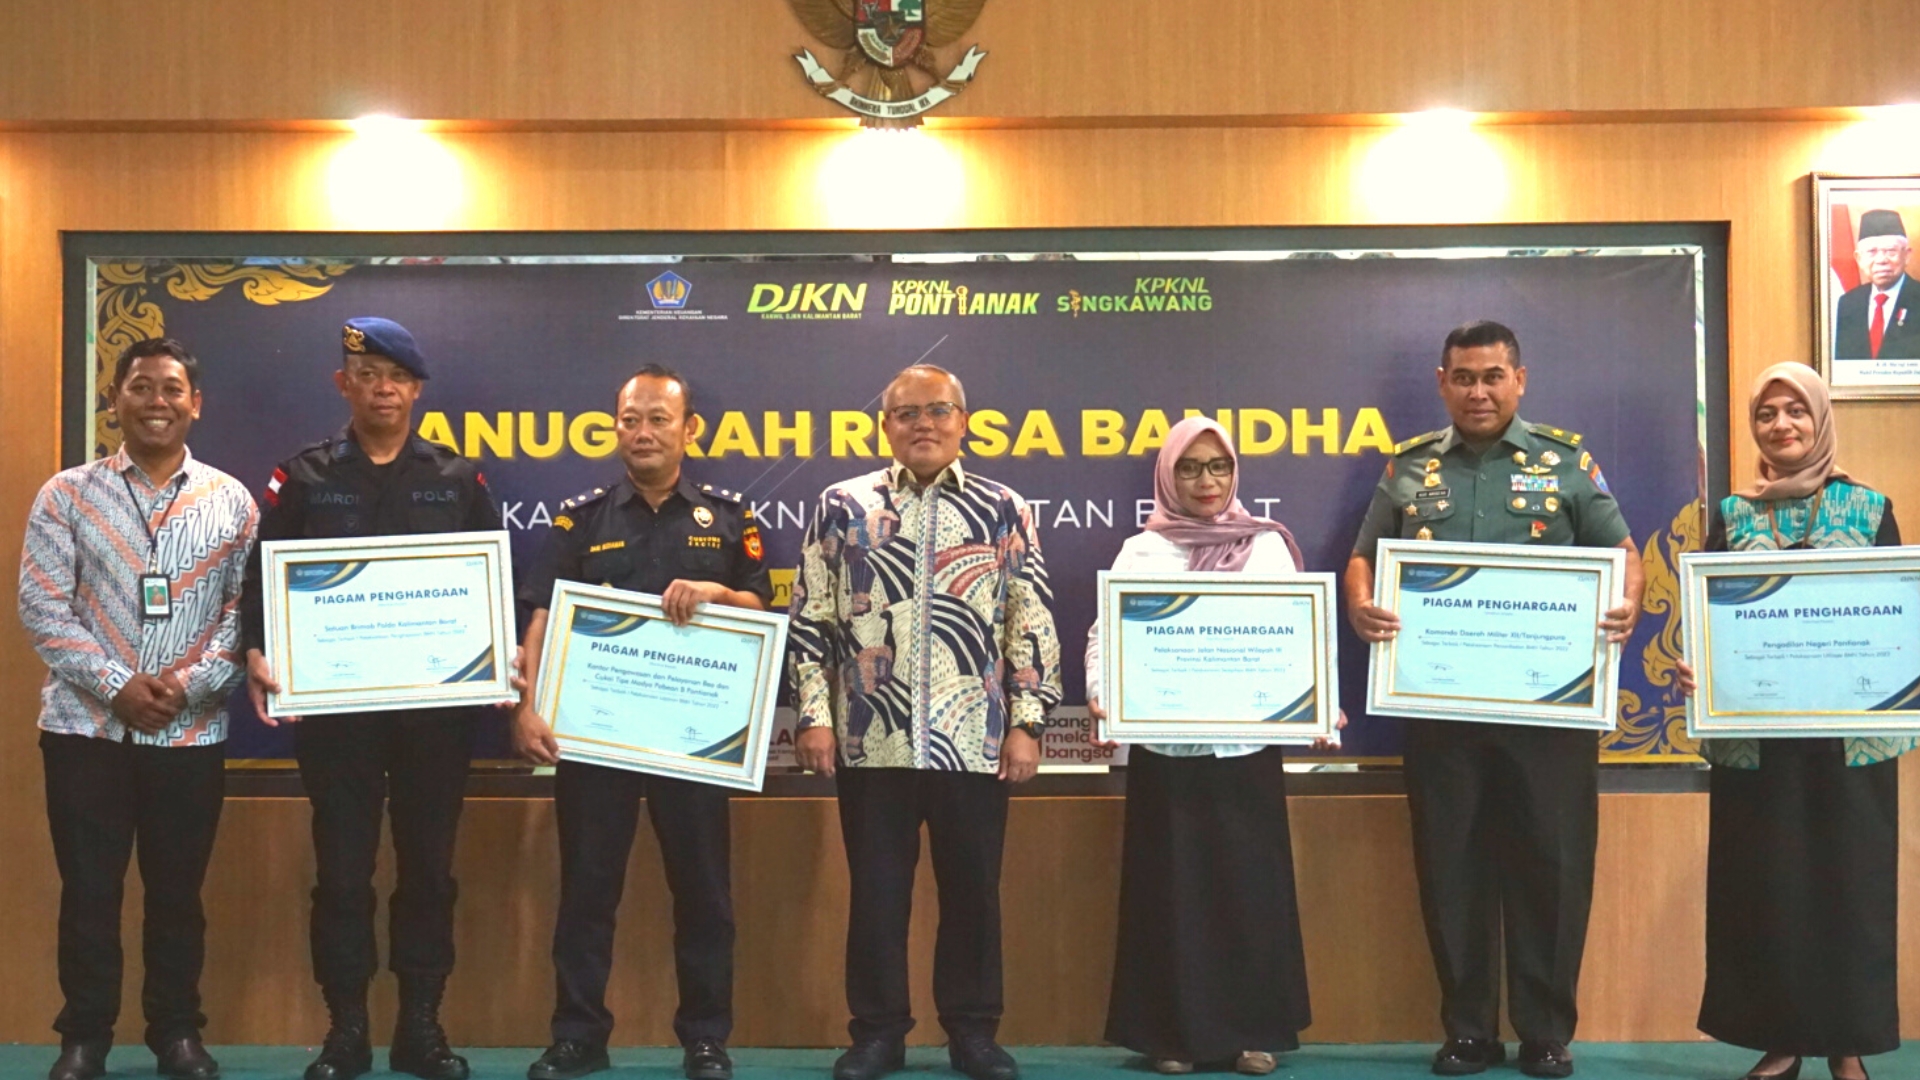 Anugerah Reksa Bandha Kantor Wilayah DJKN Kalimantan Barat